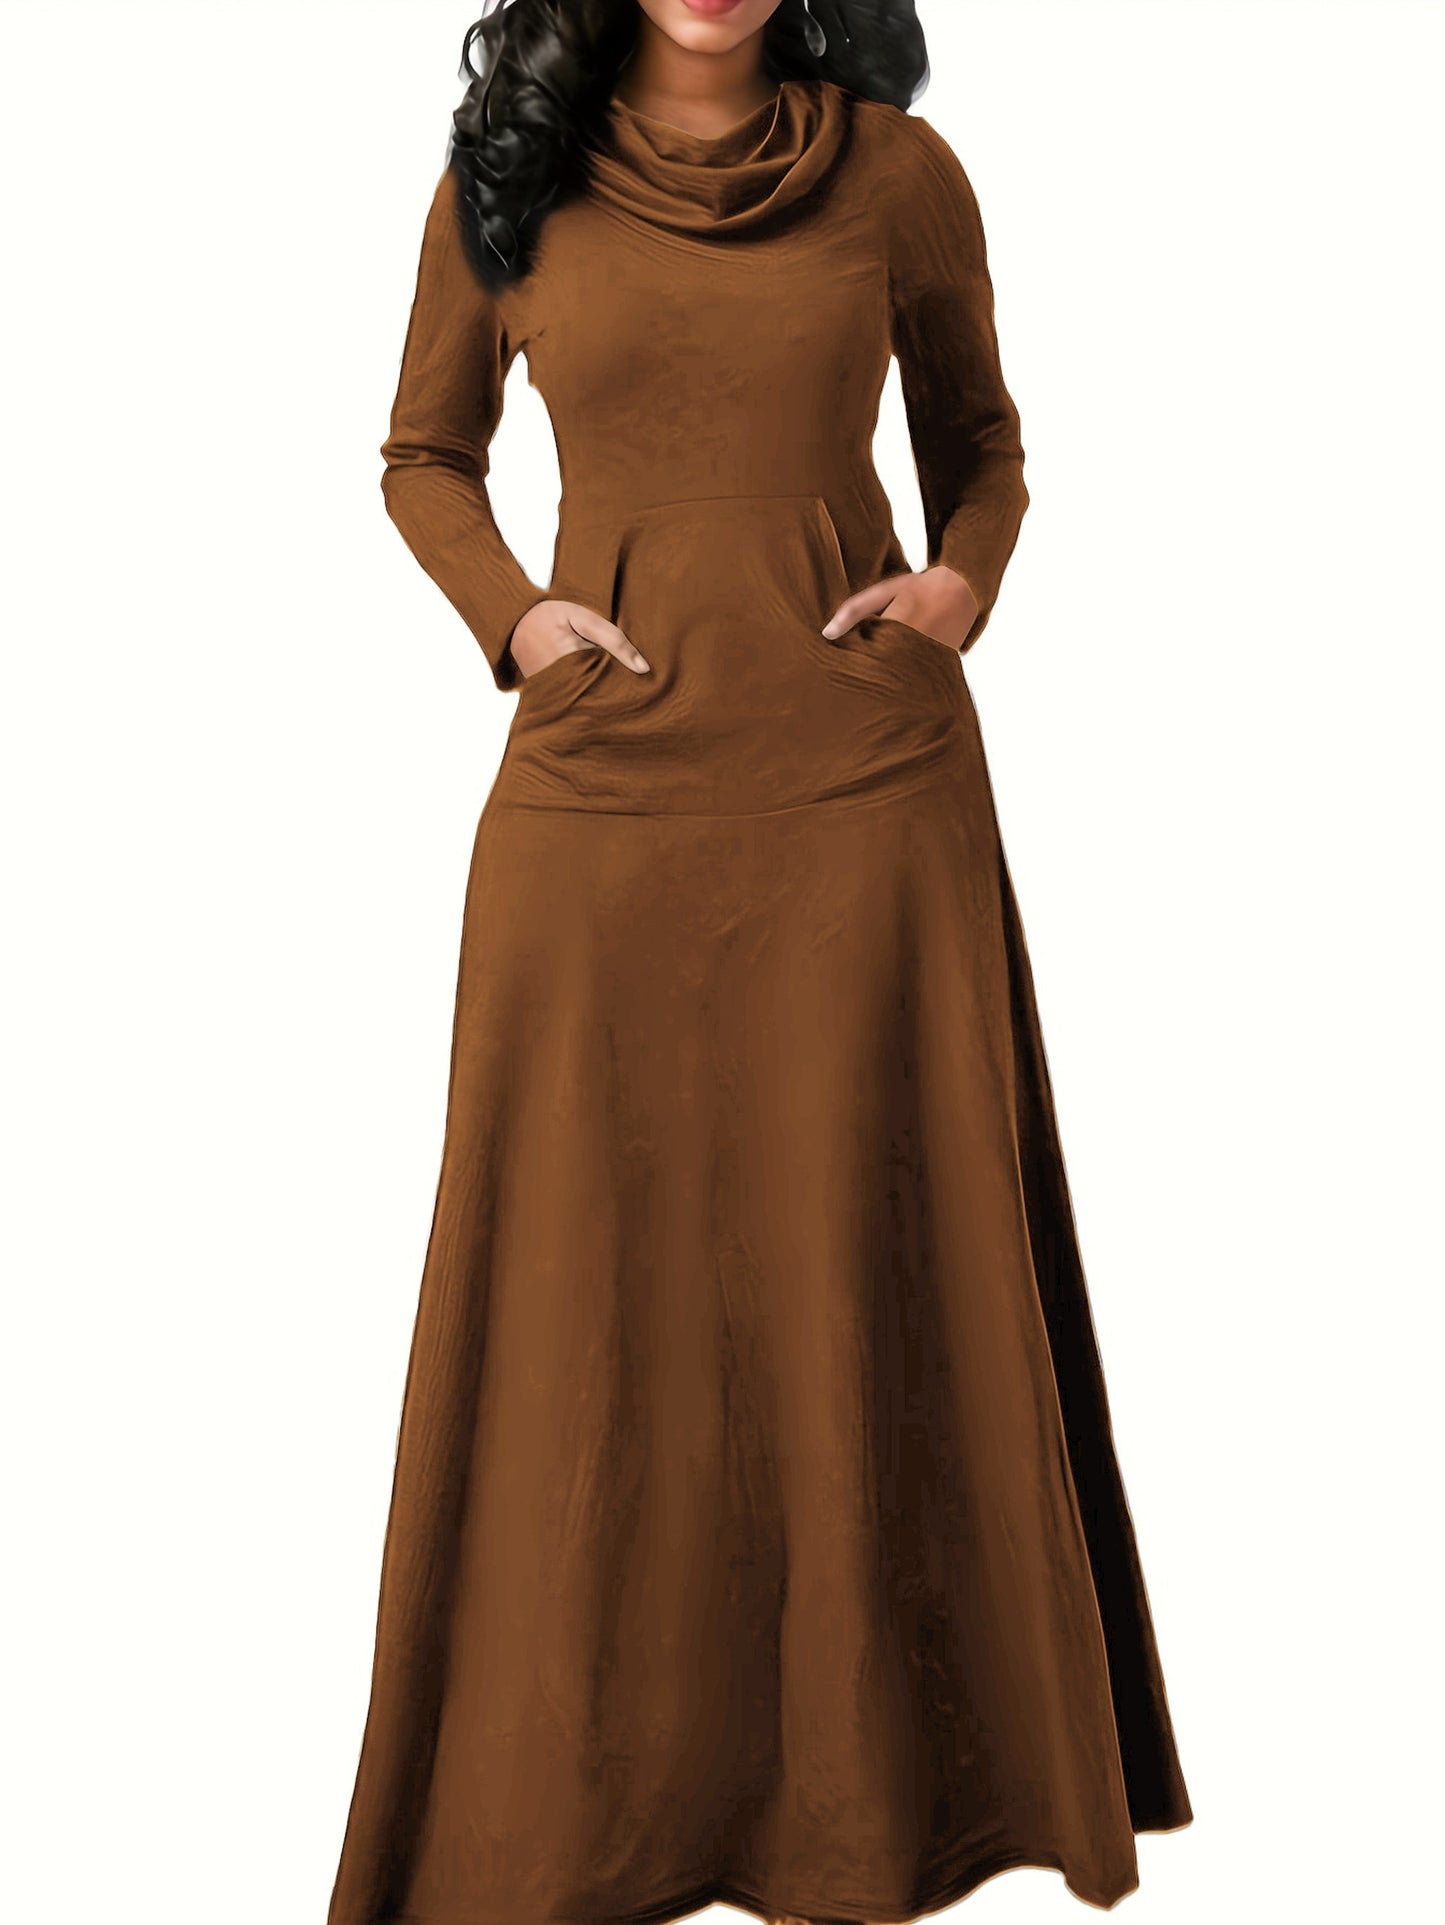 Antmvs Pile Collar Solid Maxi Dress, Elegant Long Sleeve Kangaroo Pocket Dress, Women's Clothing